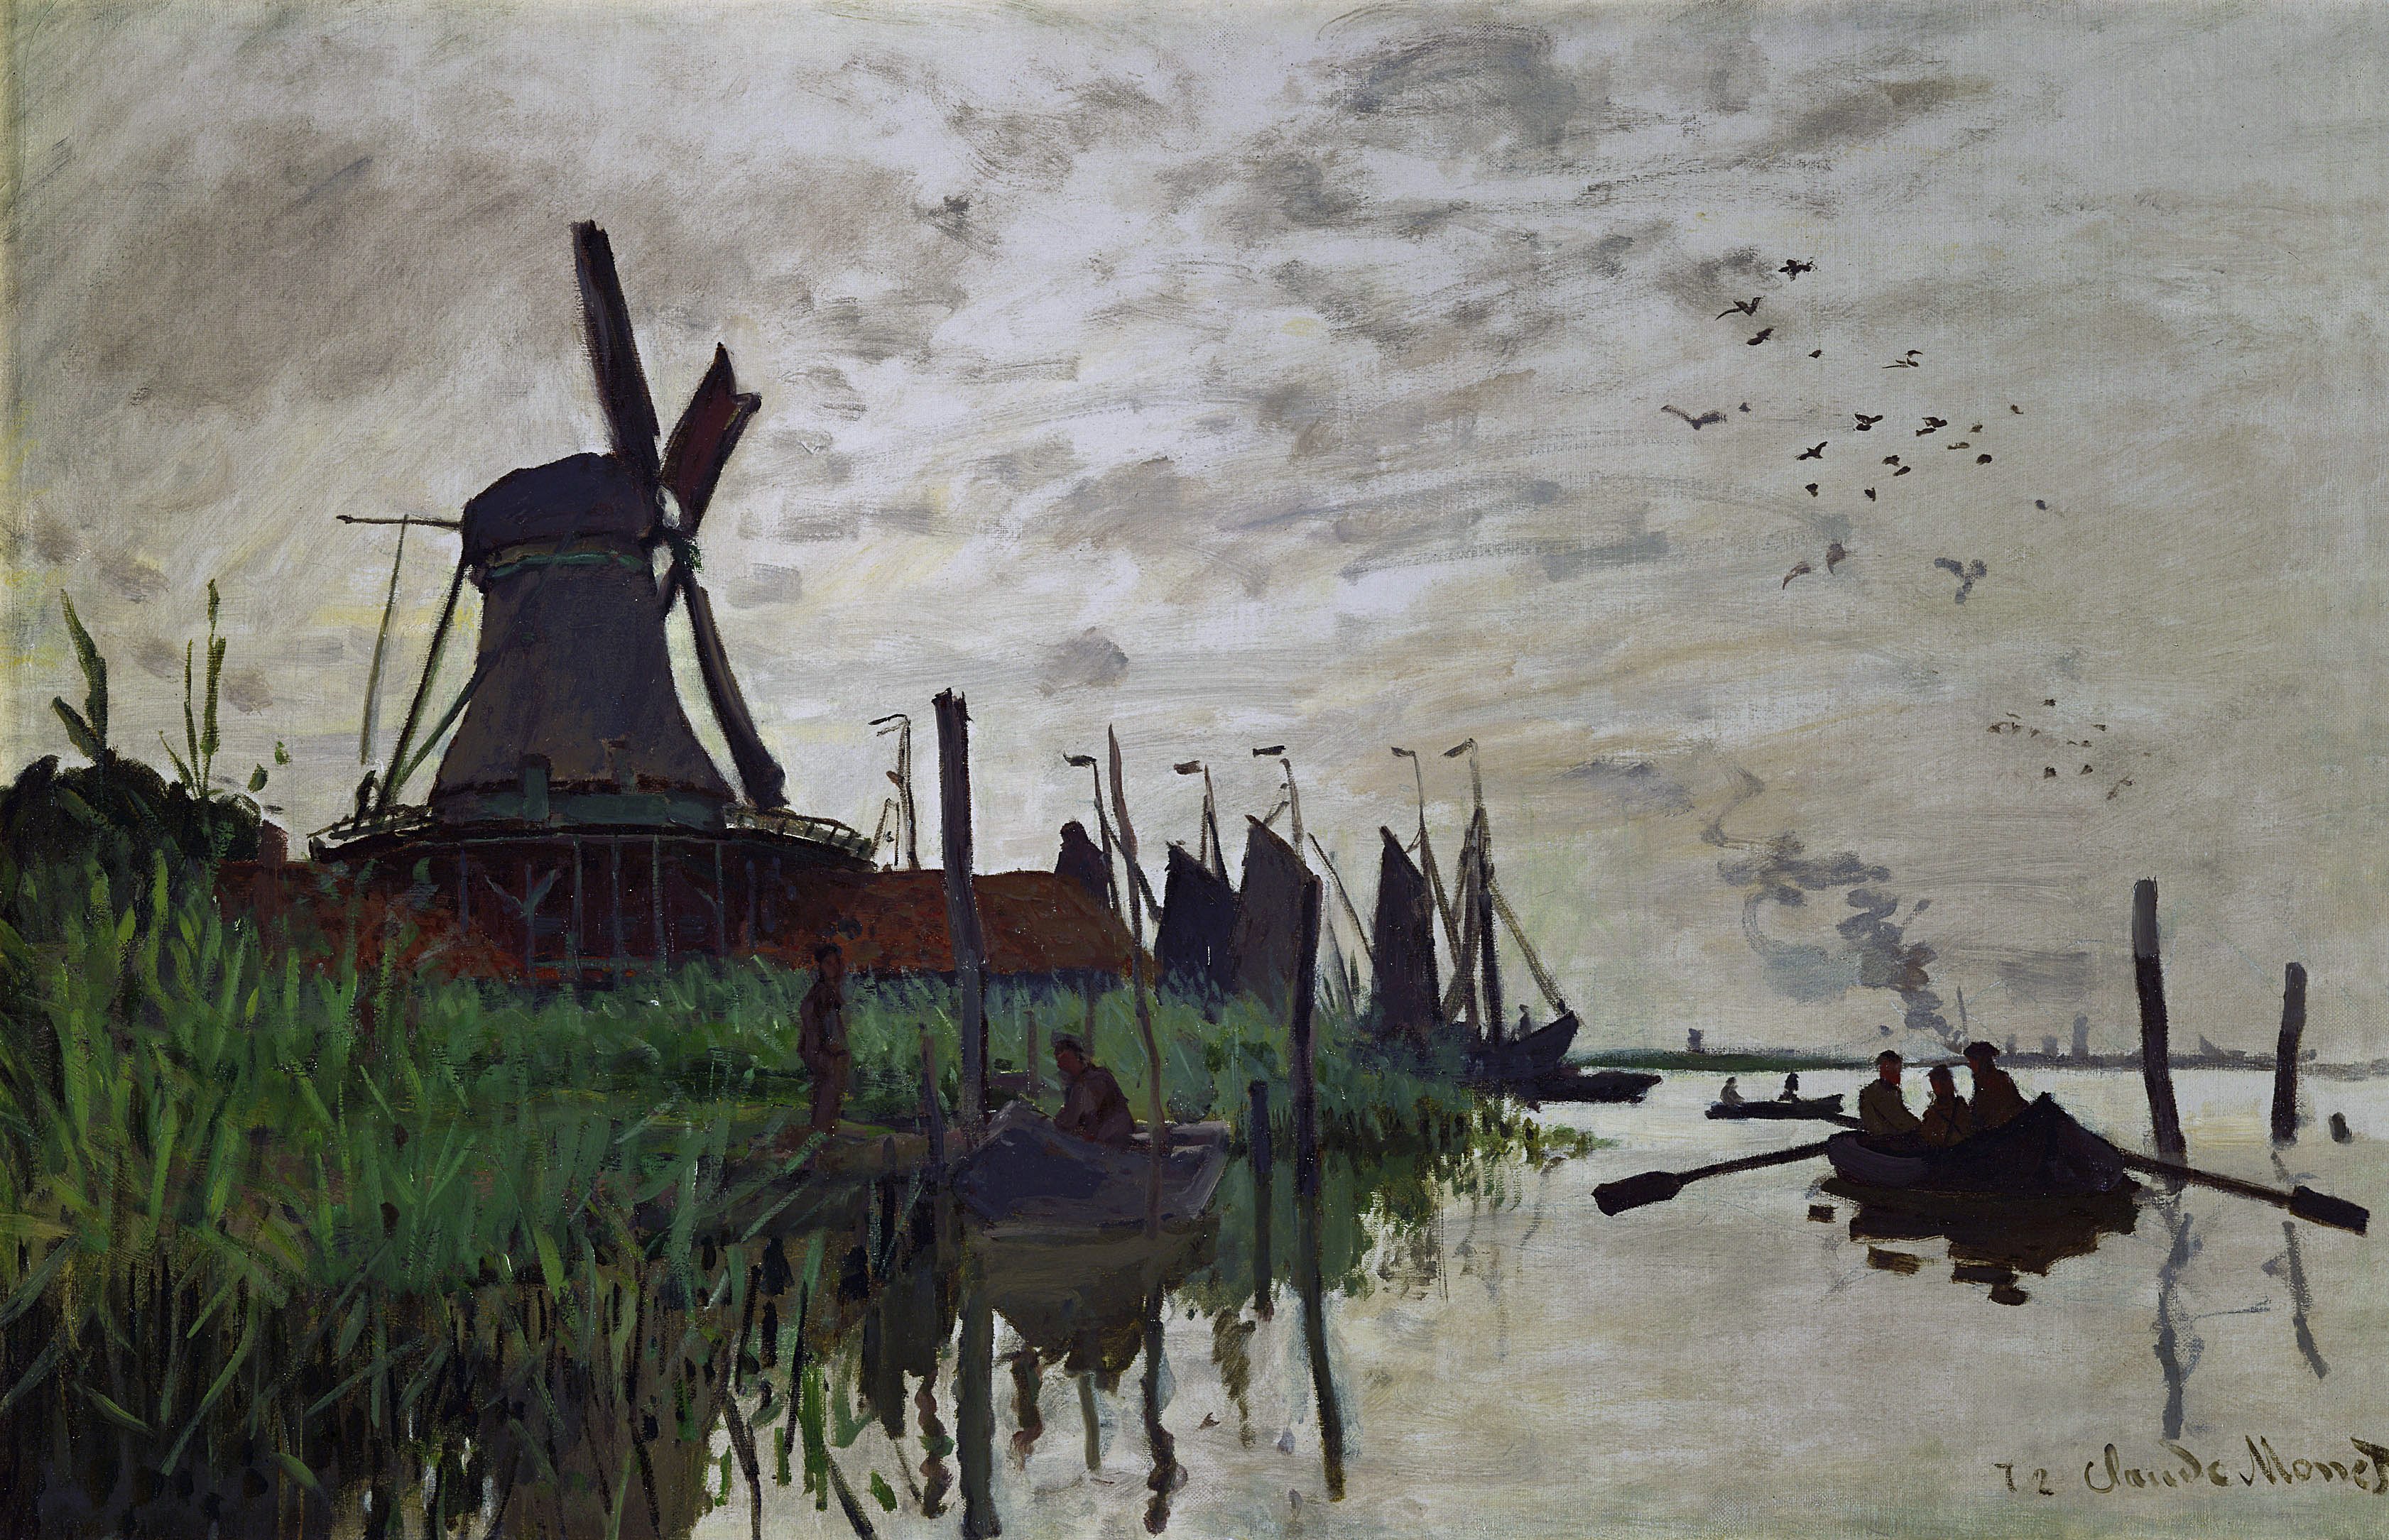 Moulin à Zaandam